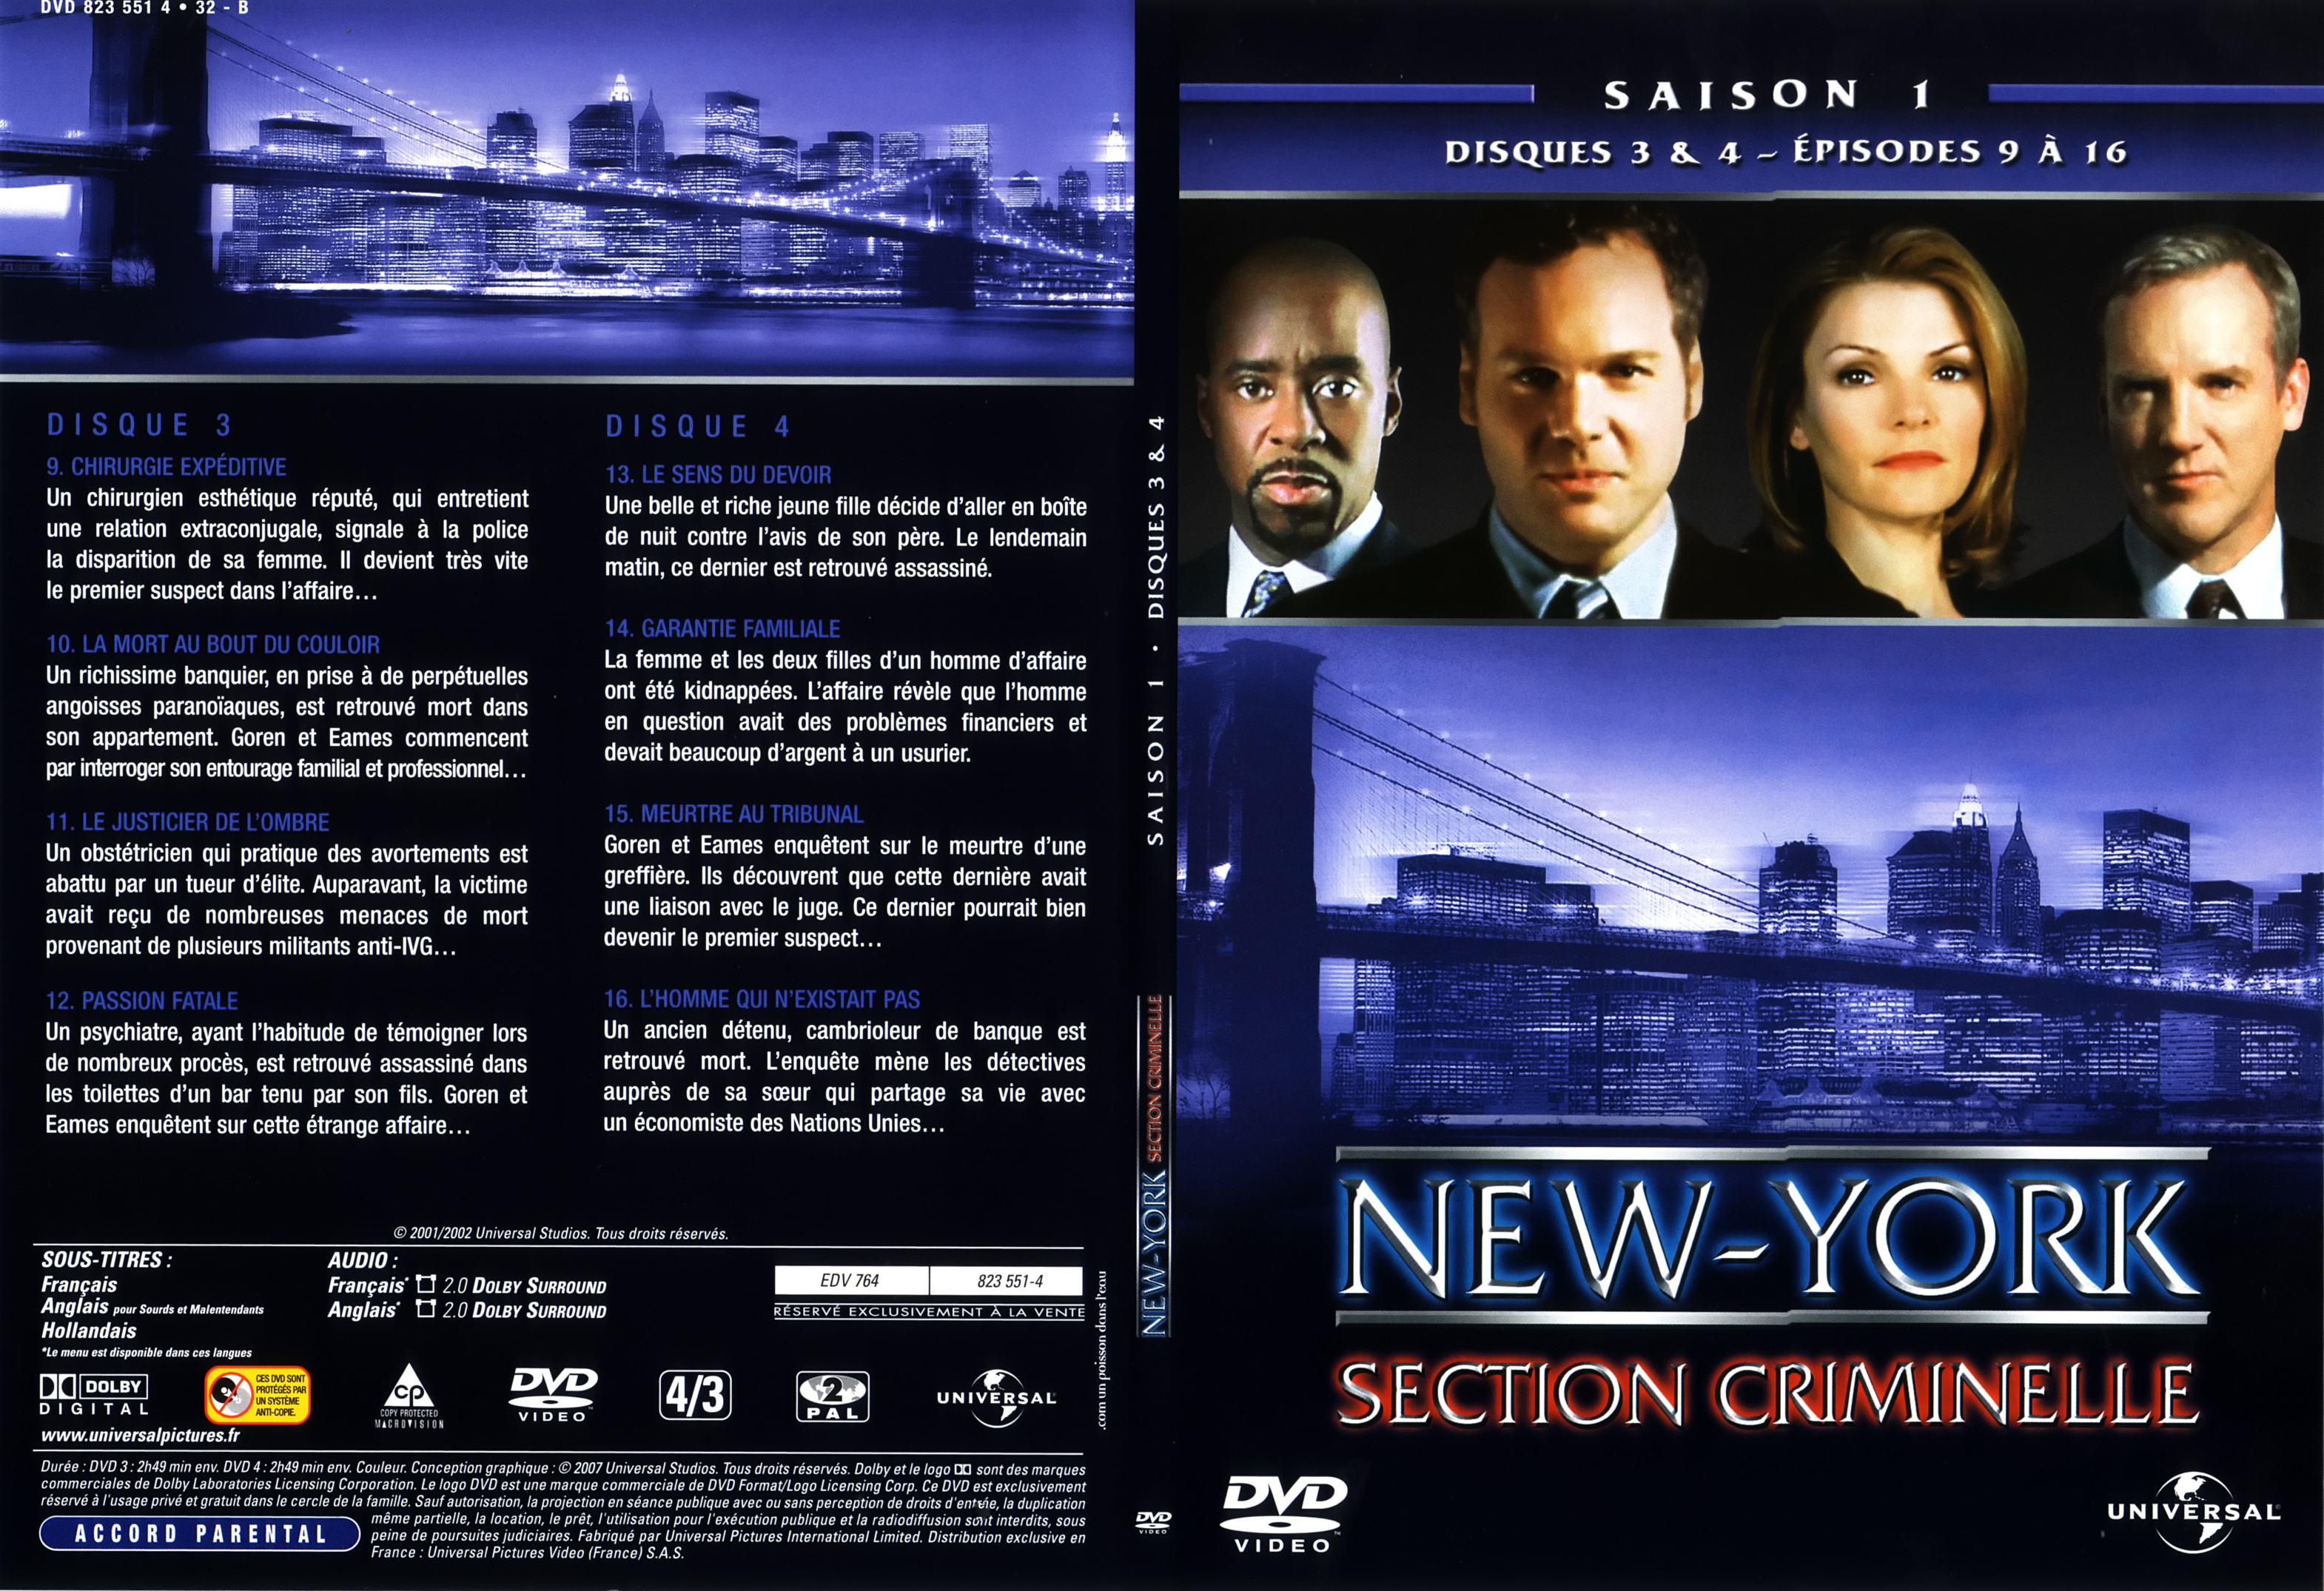 Jaquette DVD New York section criminelle saison 1 DVD 2